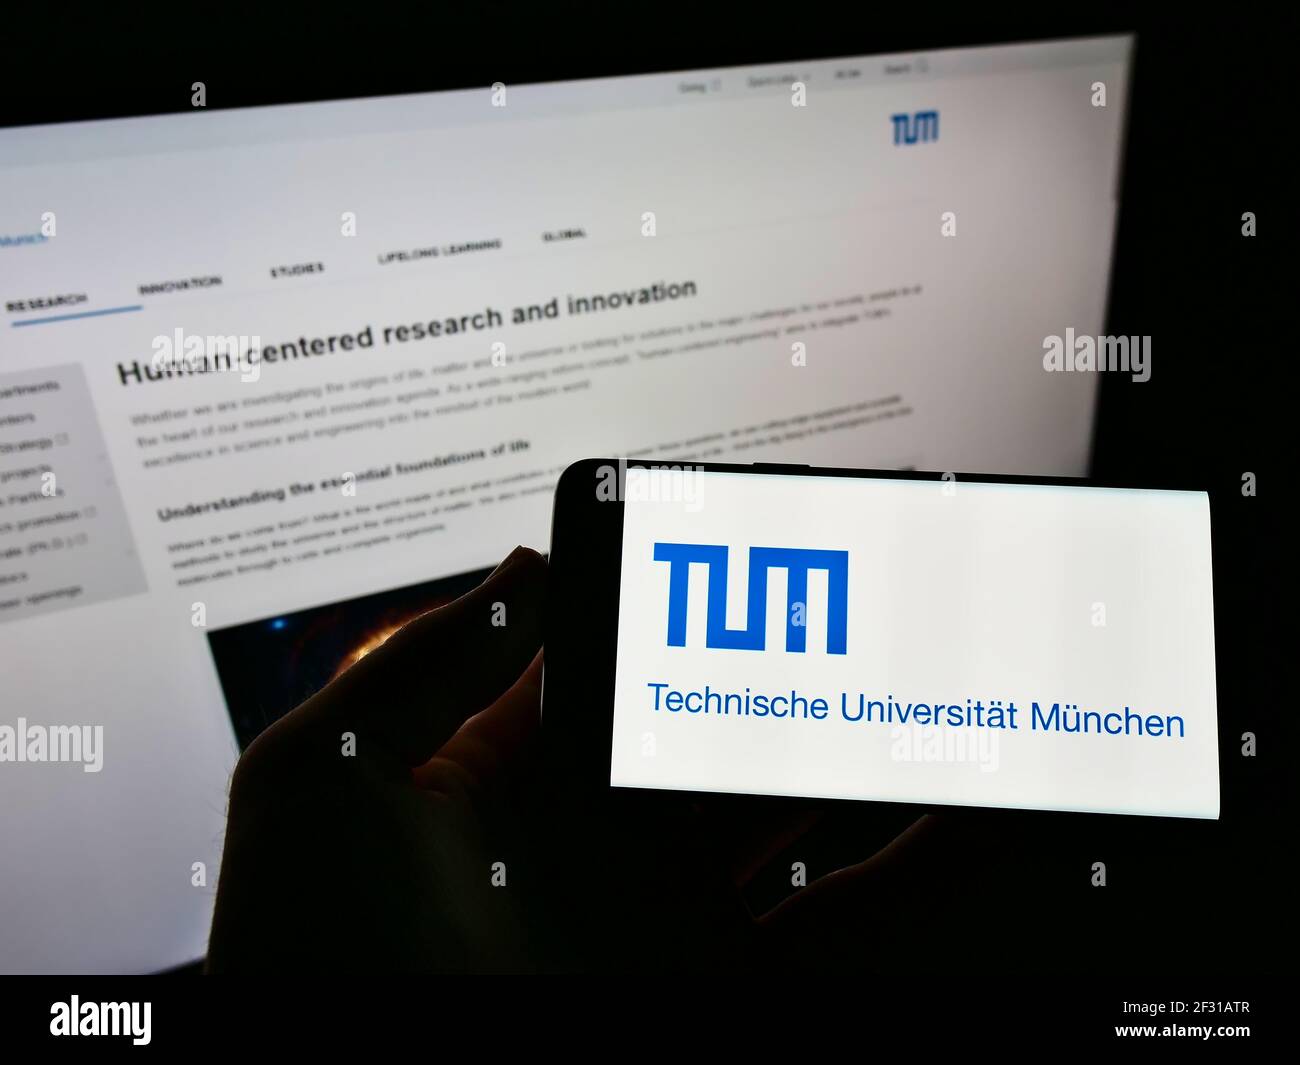 Persona que sostiene el smartphone con el logotipo de la universidad alemana Technische Universität München en la pantalla frente a la página web. Enfoque en la pantalla del teléfono. Foto de stock